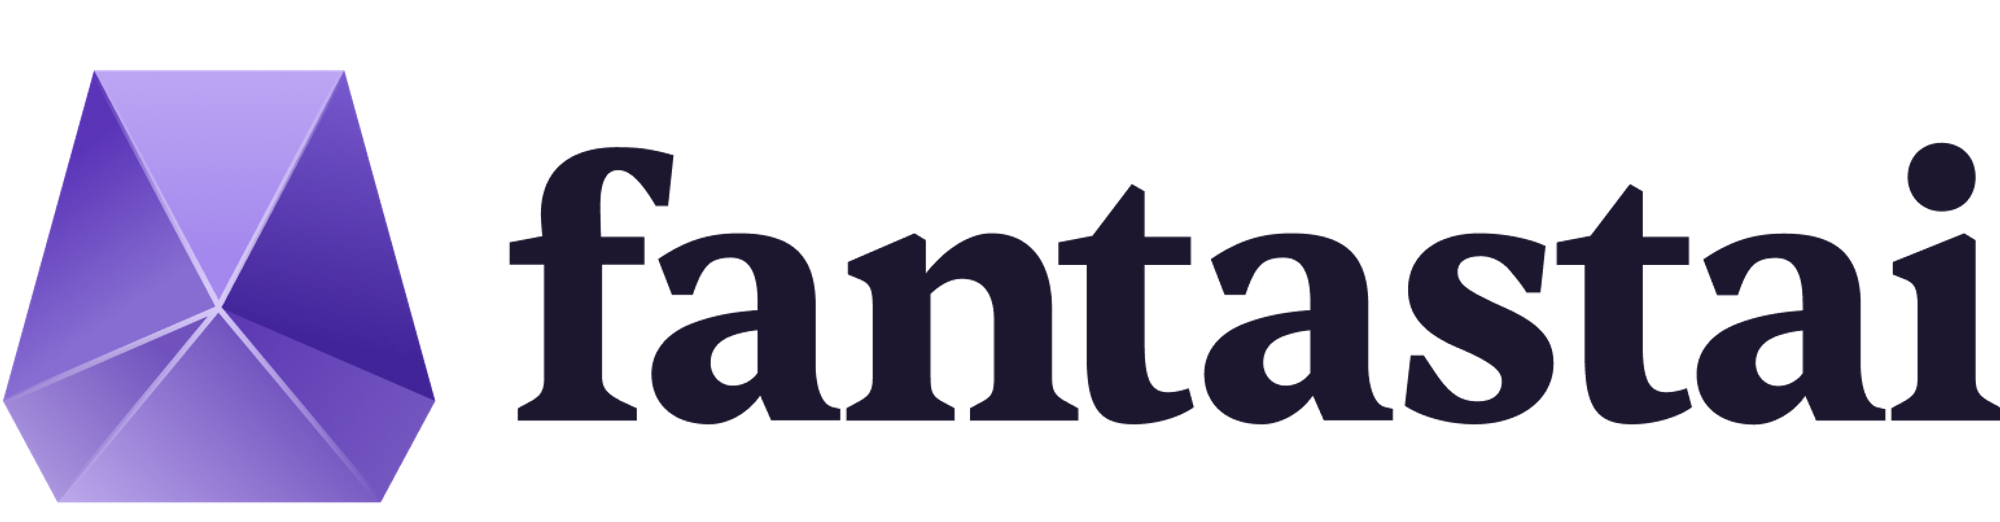 Modern logo design for fantastai.com